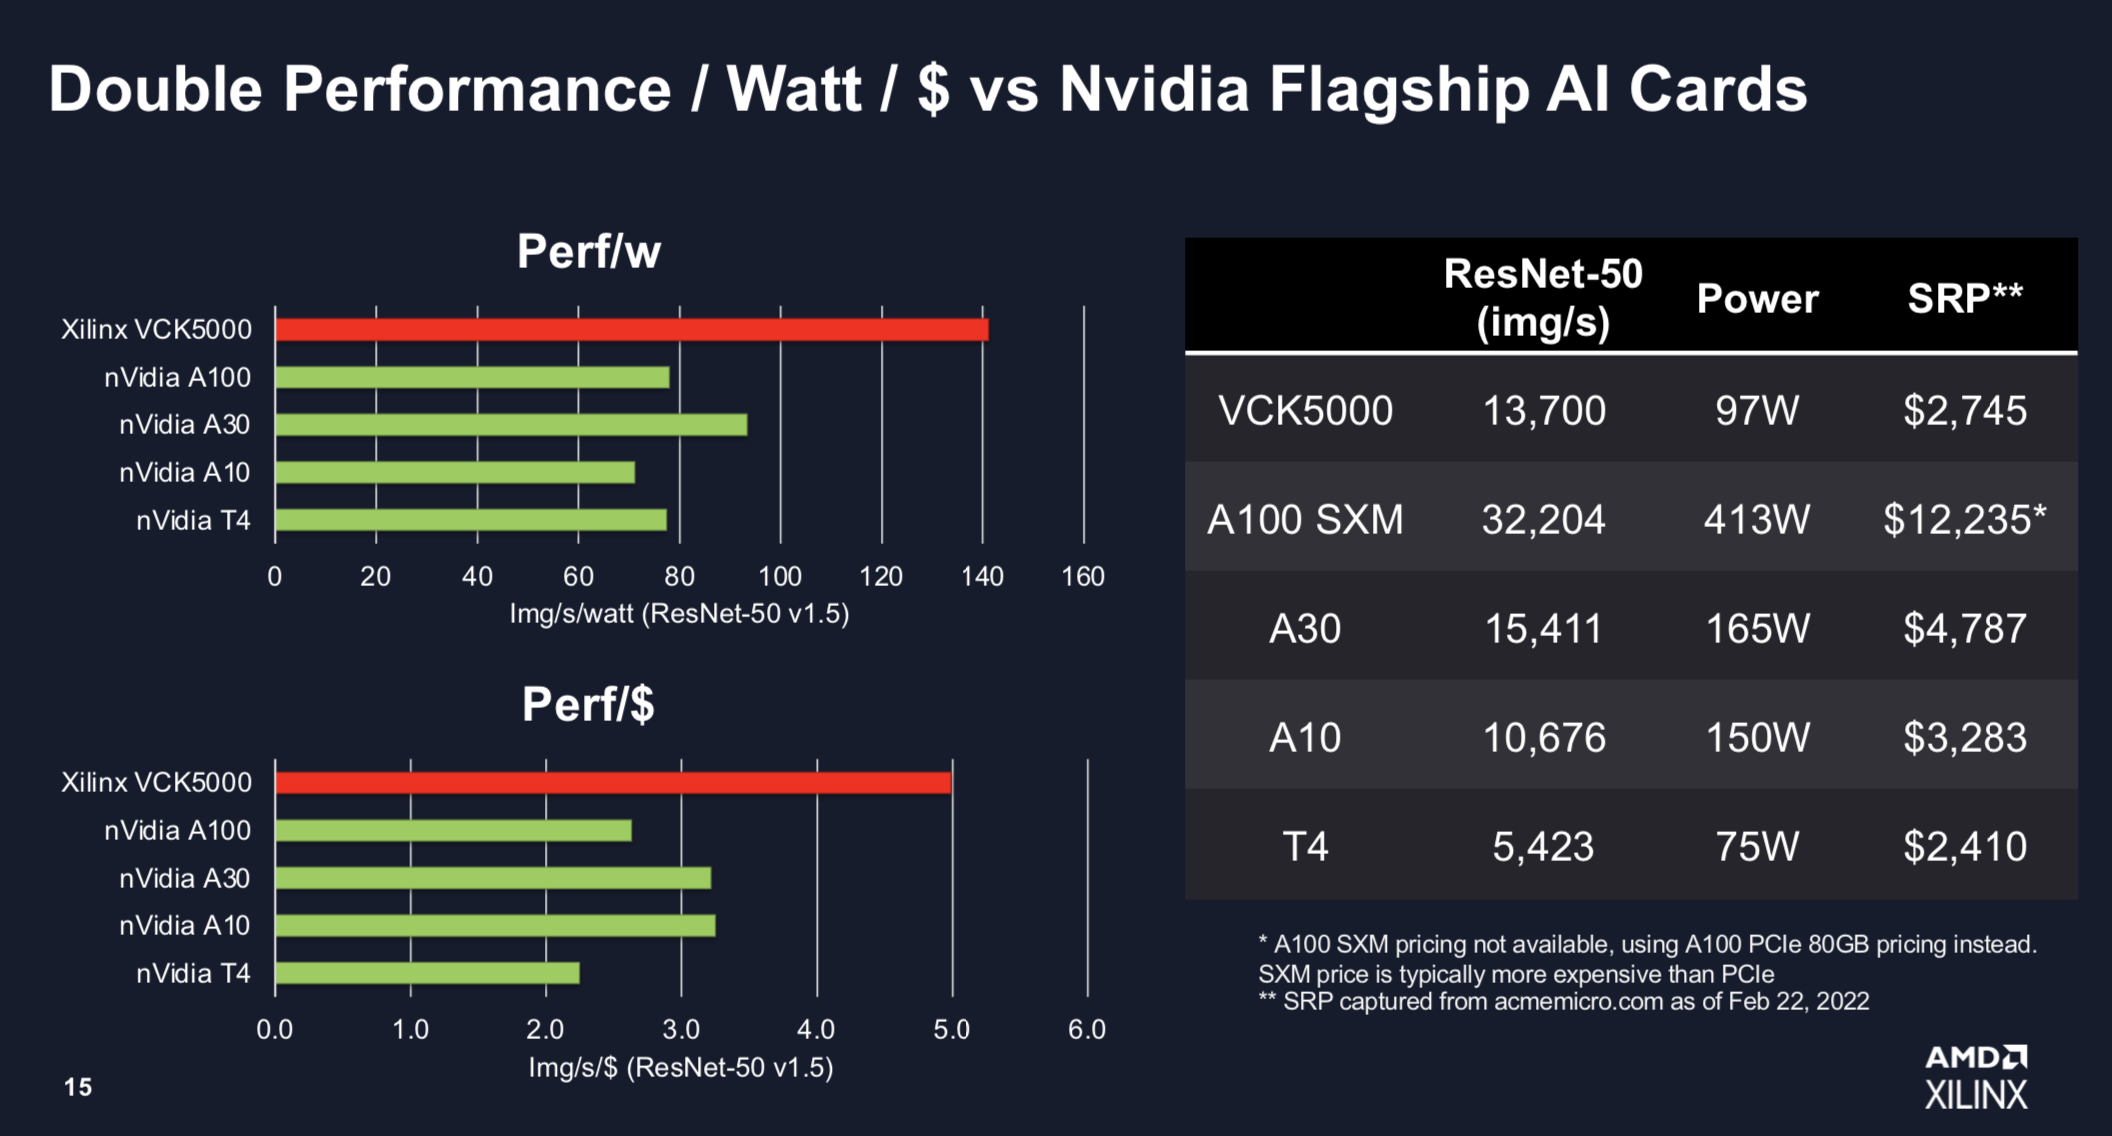 AMD_VCK5000_Slide15 (1).png